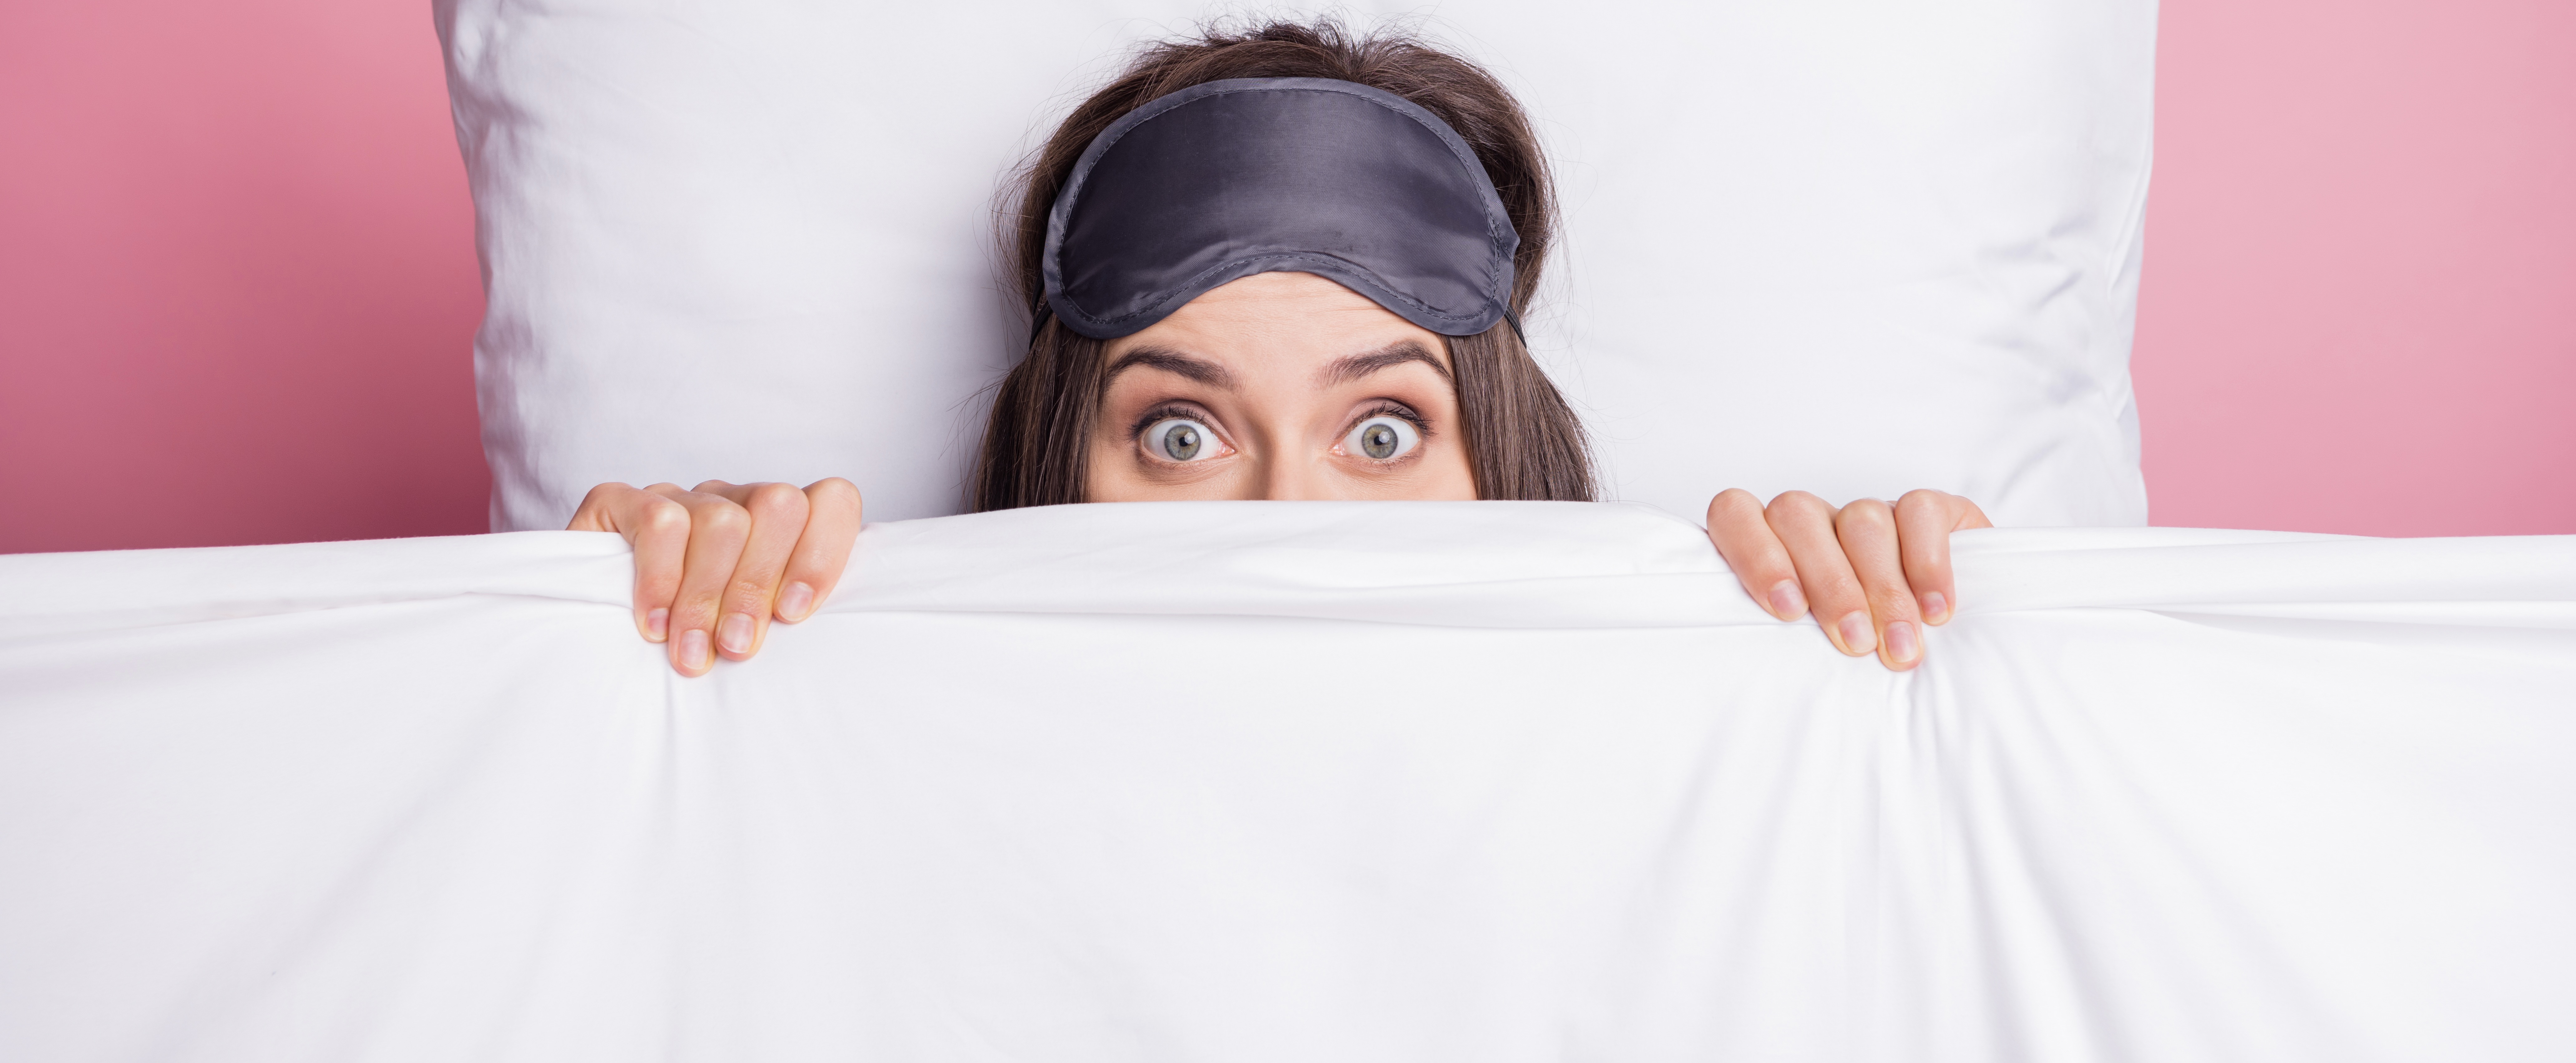 Tussen de lakens: 5 redenen waarom het een goed idee is om niet samen te slapen als koppel